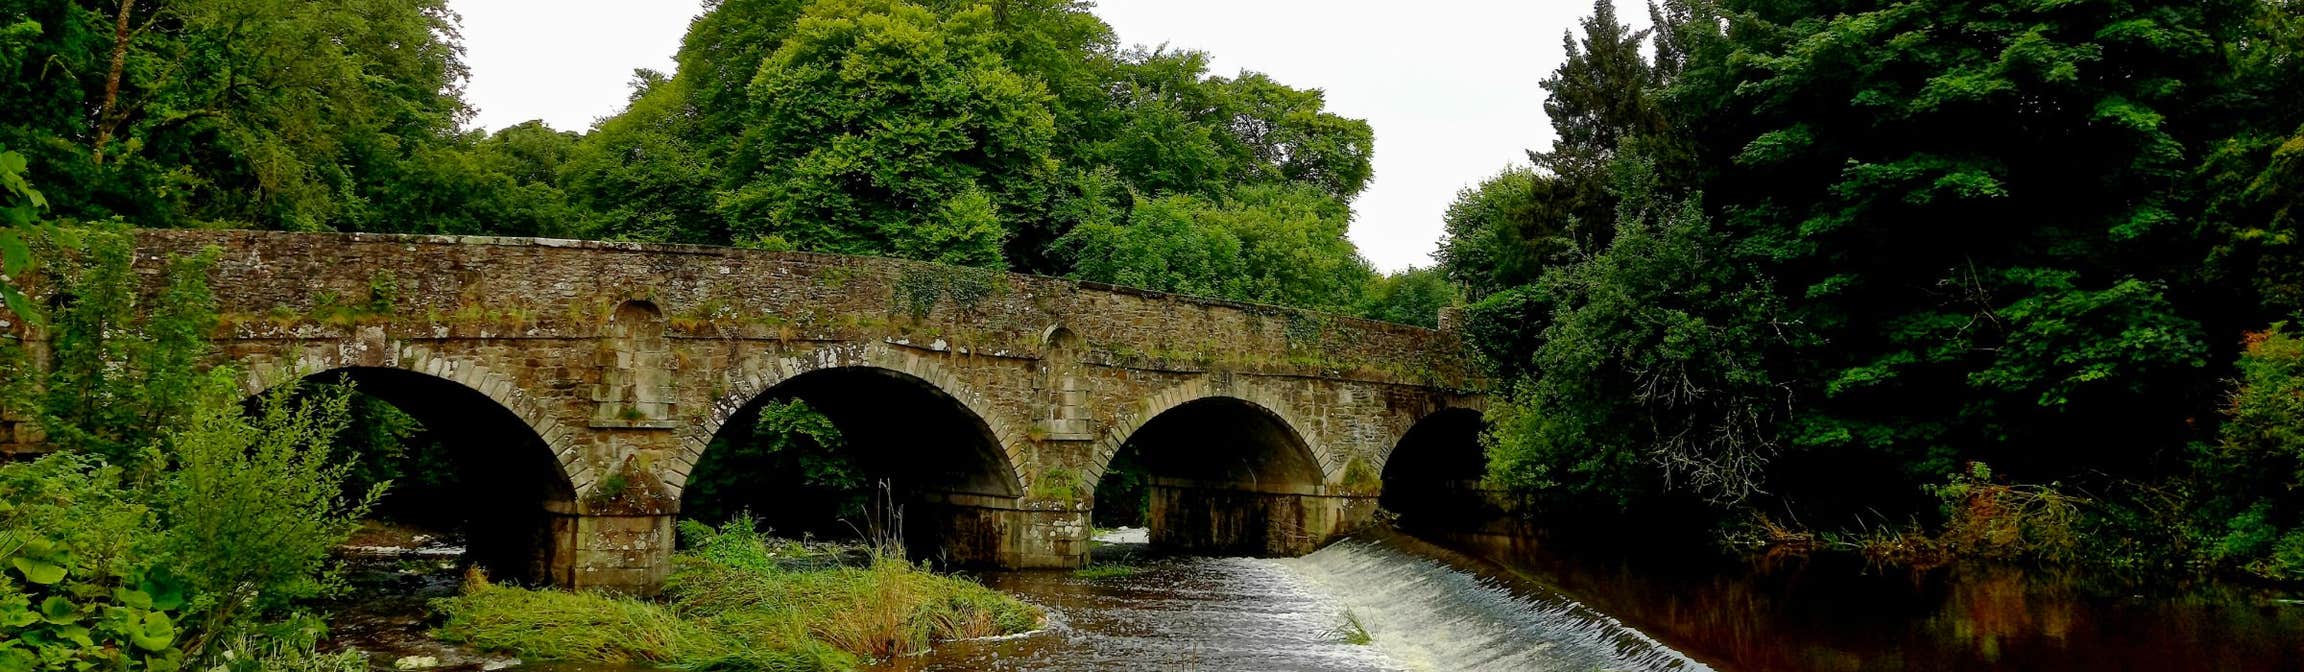 Bridge over the River Dinin in Castlecomer, County Kilkenny